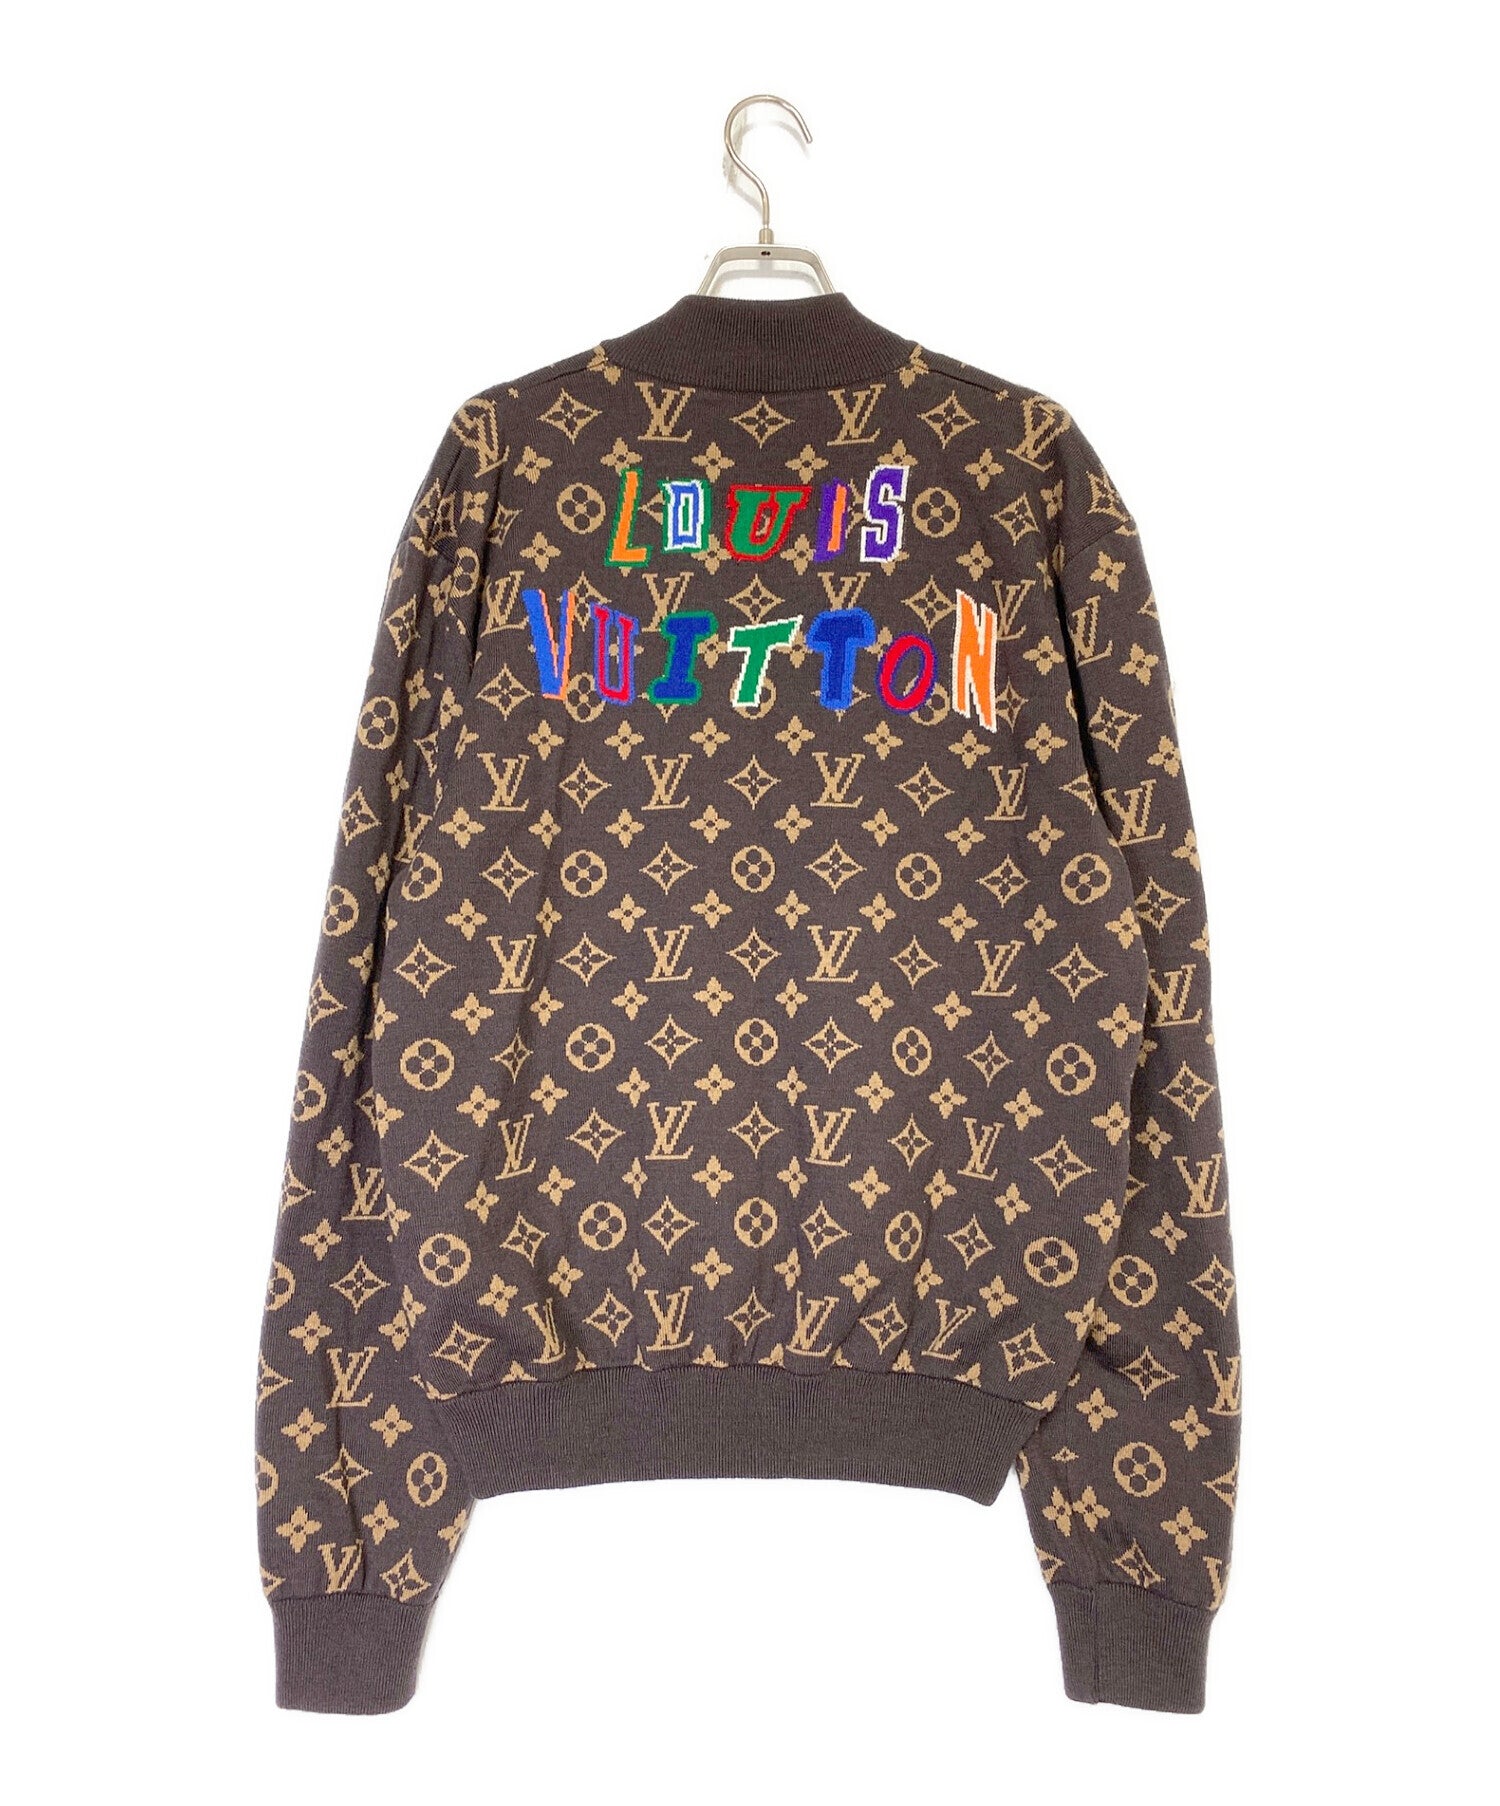 Louis Vuitton archive jacket